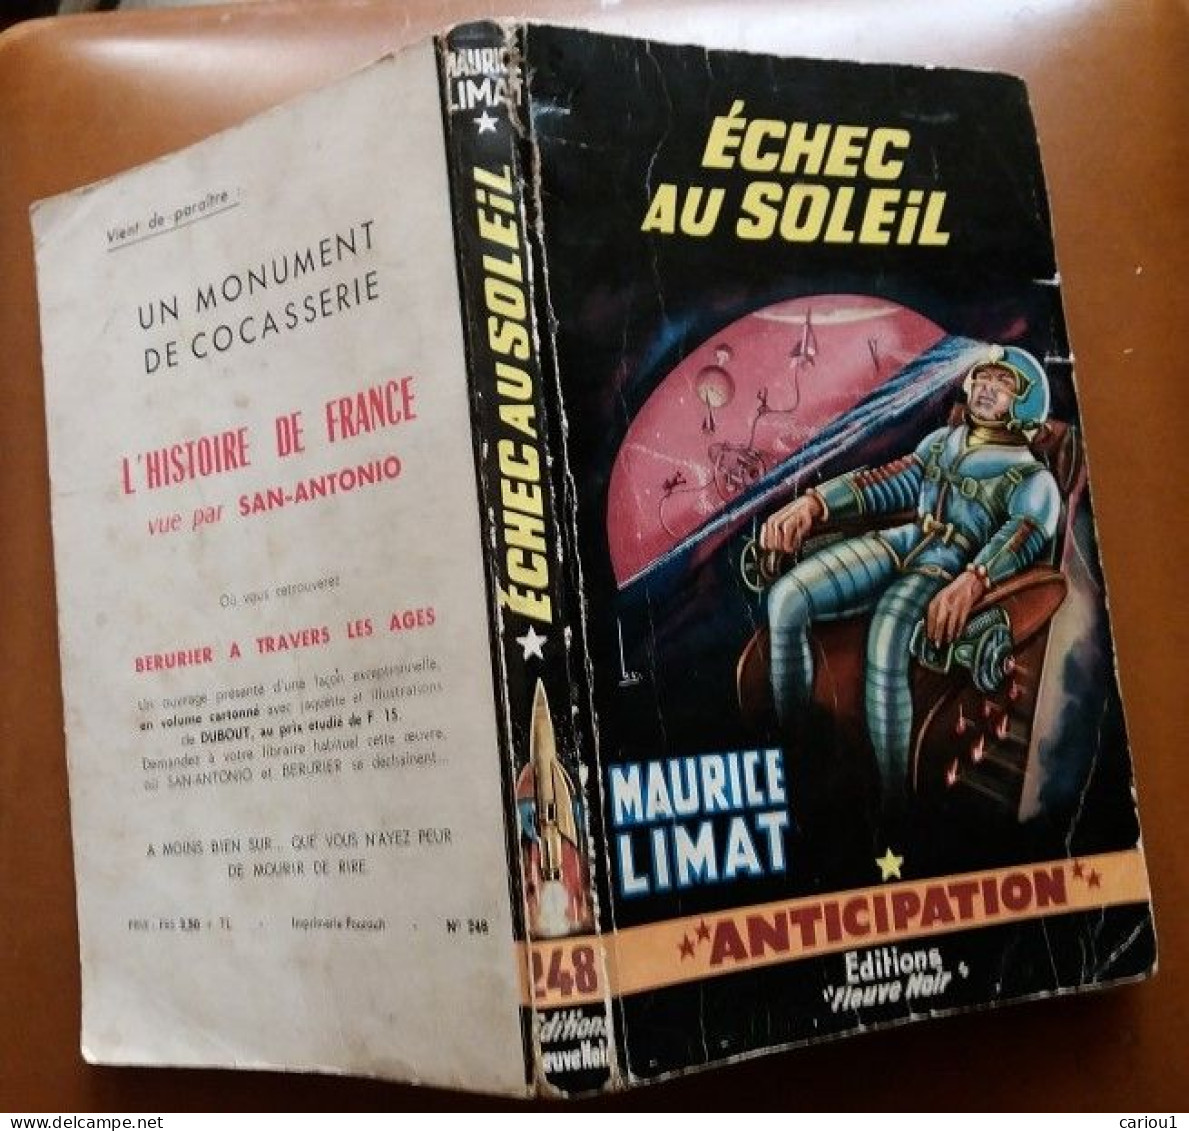 C1 Maurice LIMAT Echec Au Soleil FNA 248 1964 EO Epuise PORT INCLUS France - Fleuve Noir